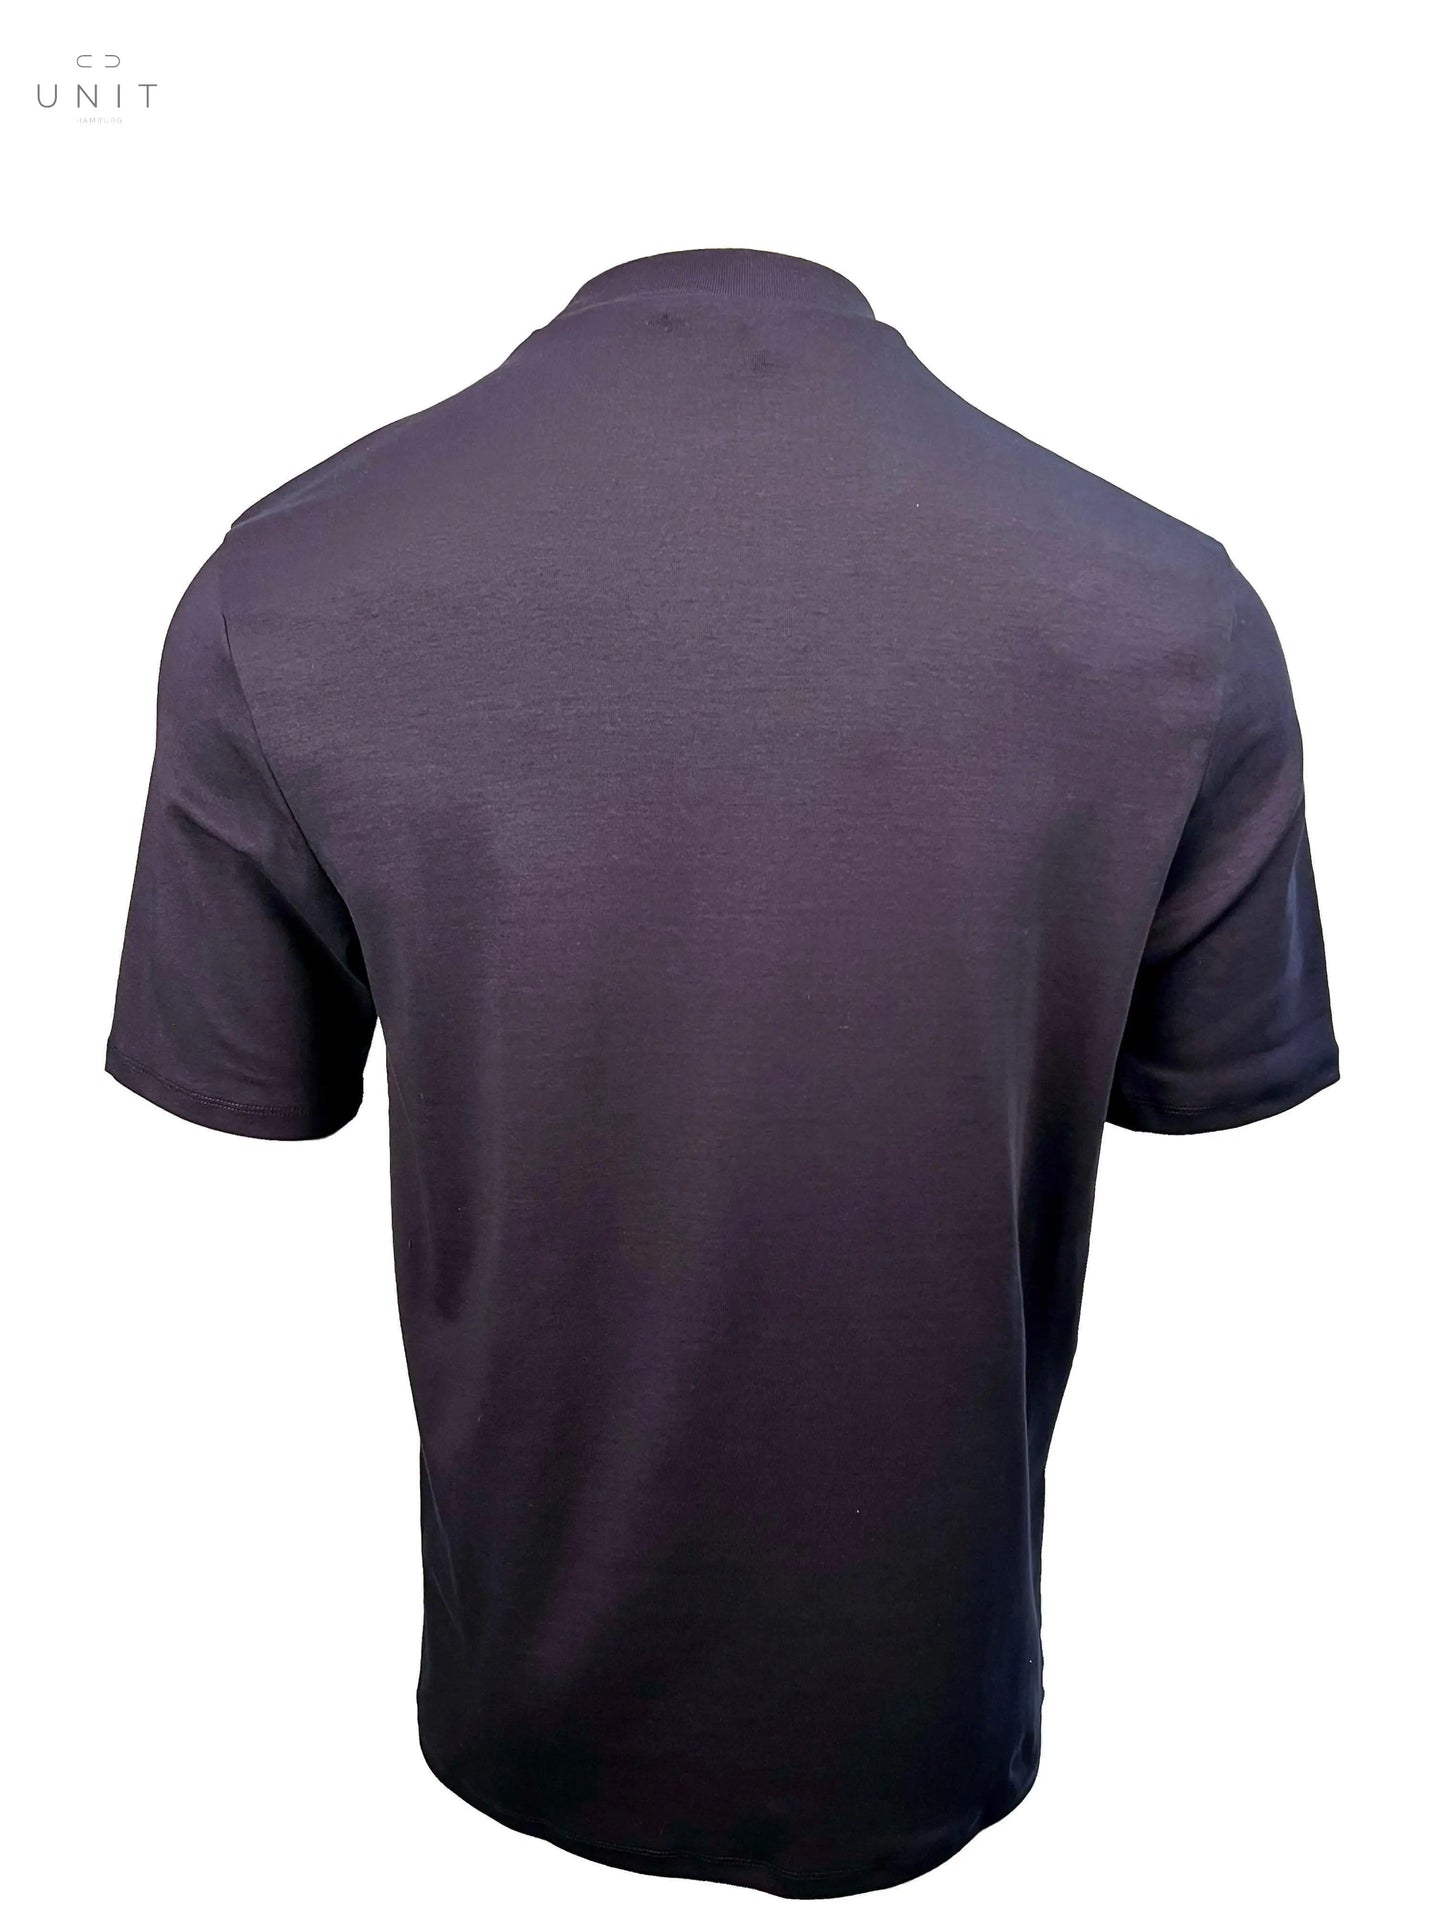 Kiefermann 432-21127 Paddy Heavy T-Shirt crew neck black  T-Shirt aus dickerer Qualität sitzt perfekt und glatt 98% Organic Cotton 2% Elastan 30 Grad Feinwäsche Made in Portugal